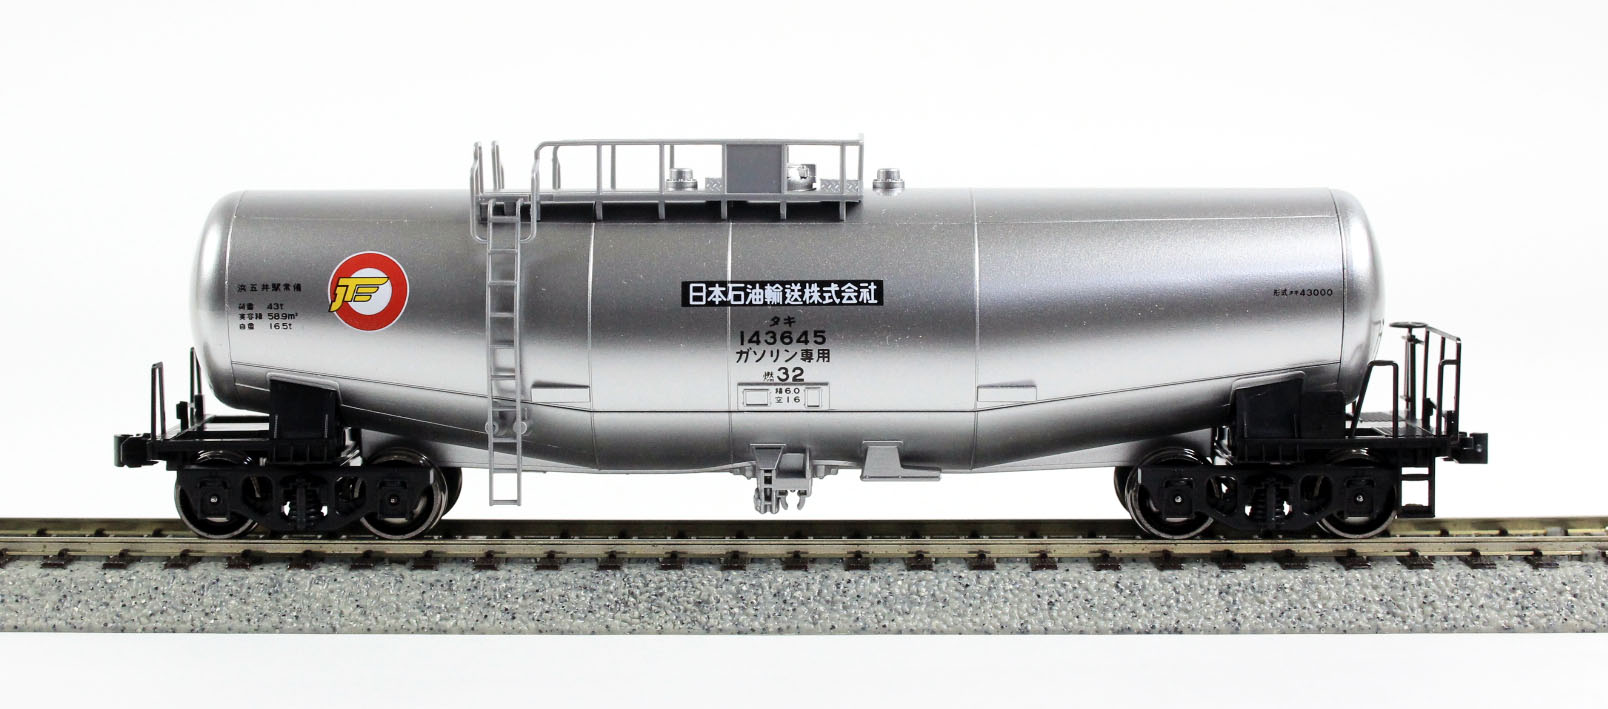 KATO 1-825 タキ43000 シルバー（タキ143645） | 鉄道模型 通販 ホビー 